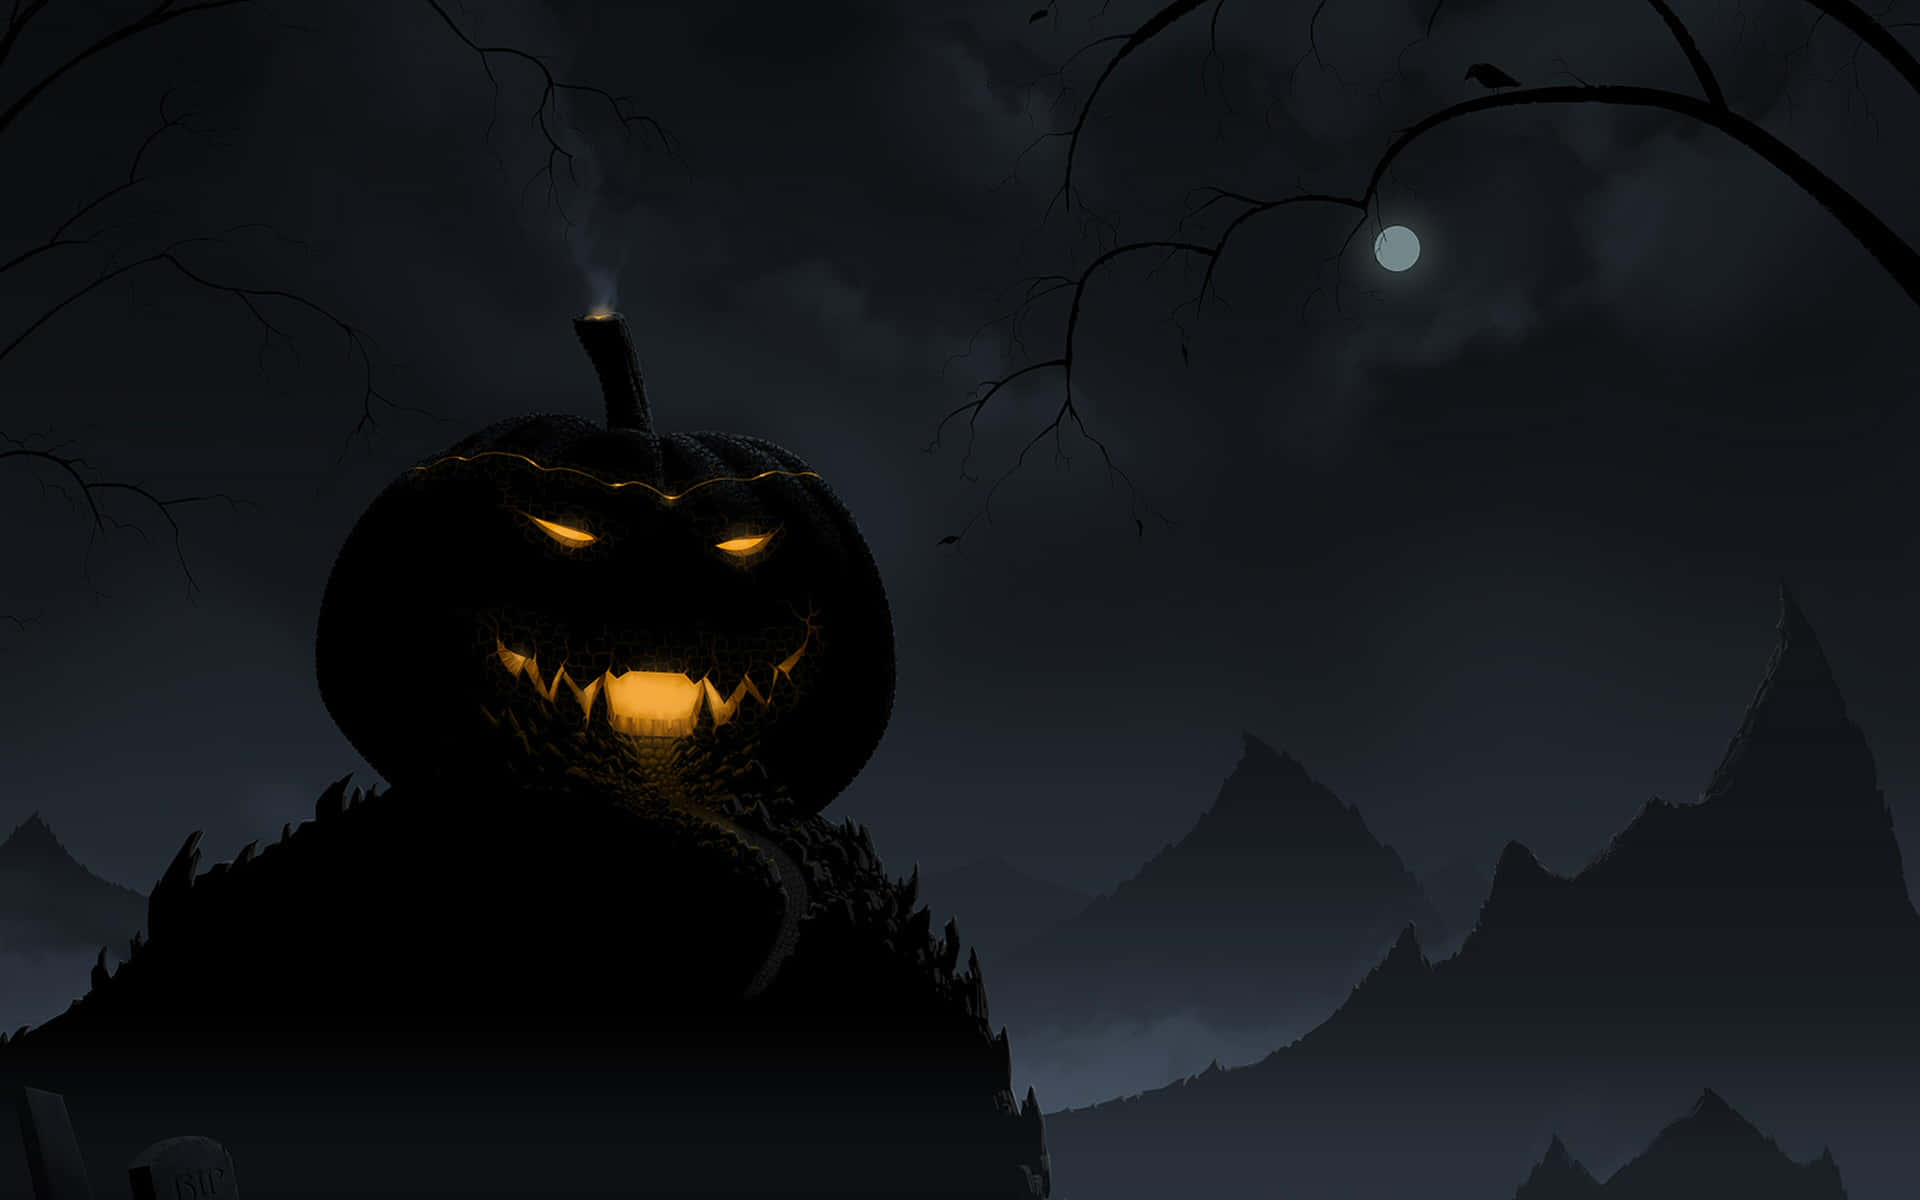 Boo! Vis din uhyggelige side med en festlig Halloween-profilbillede!